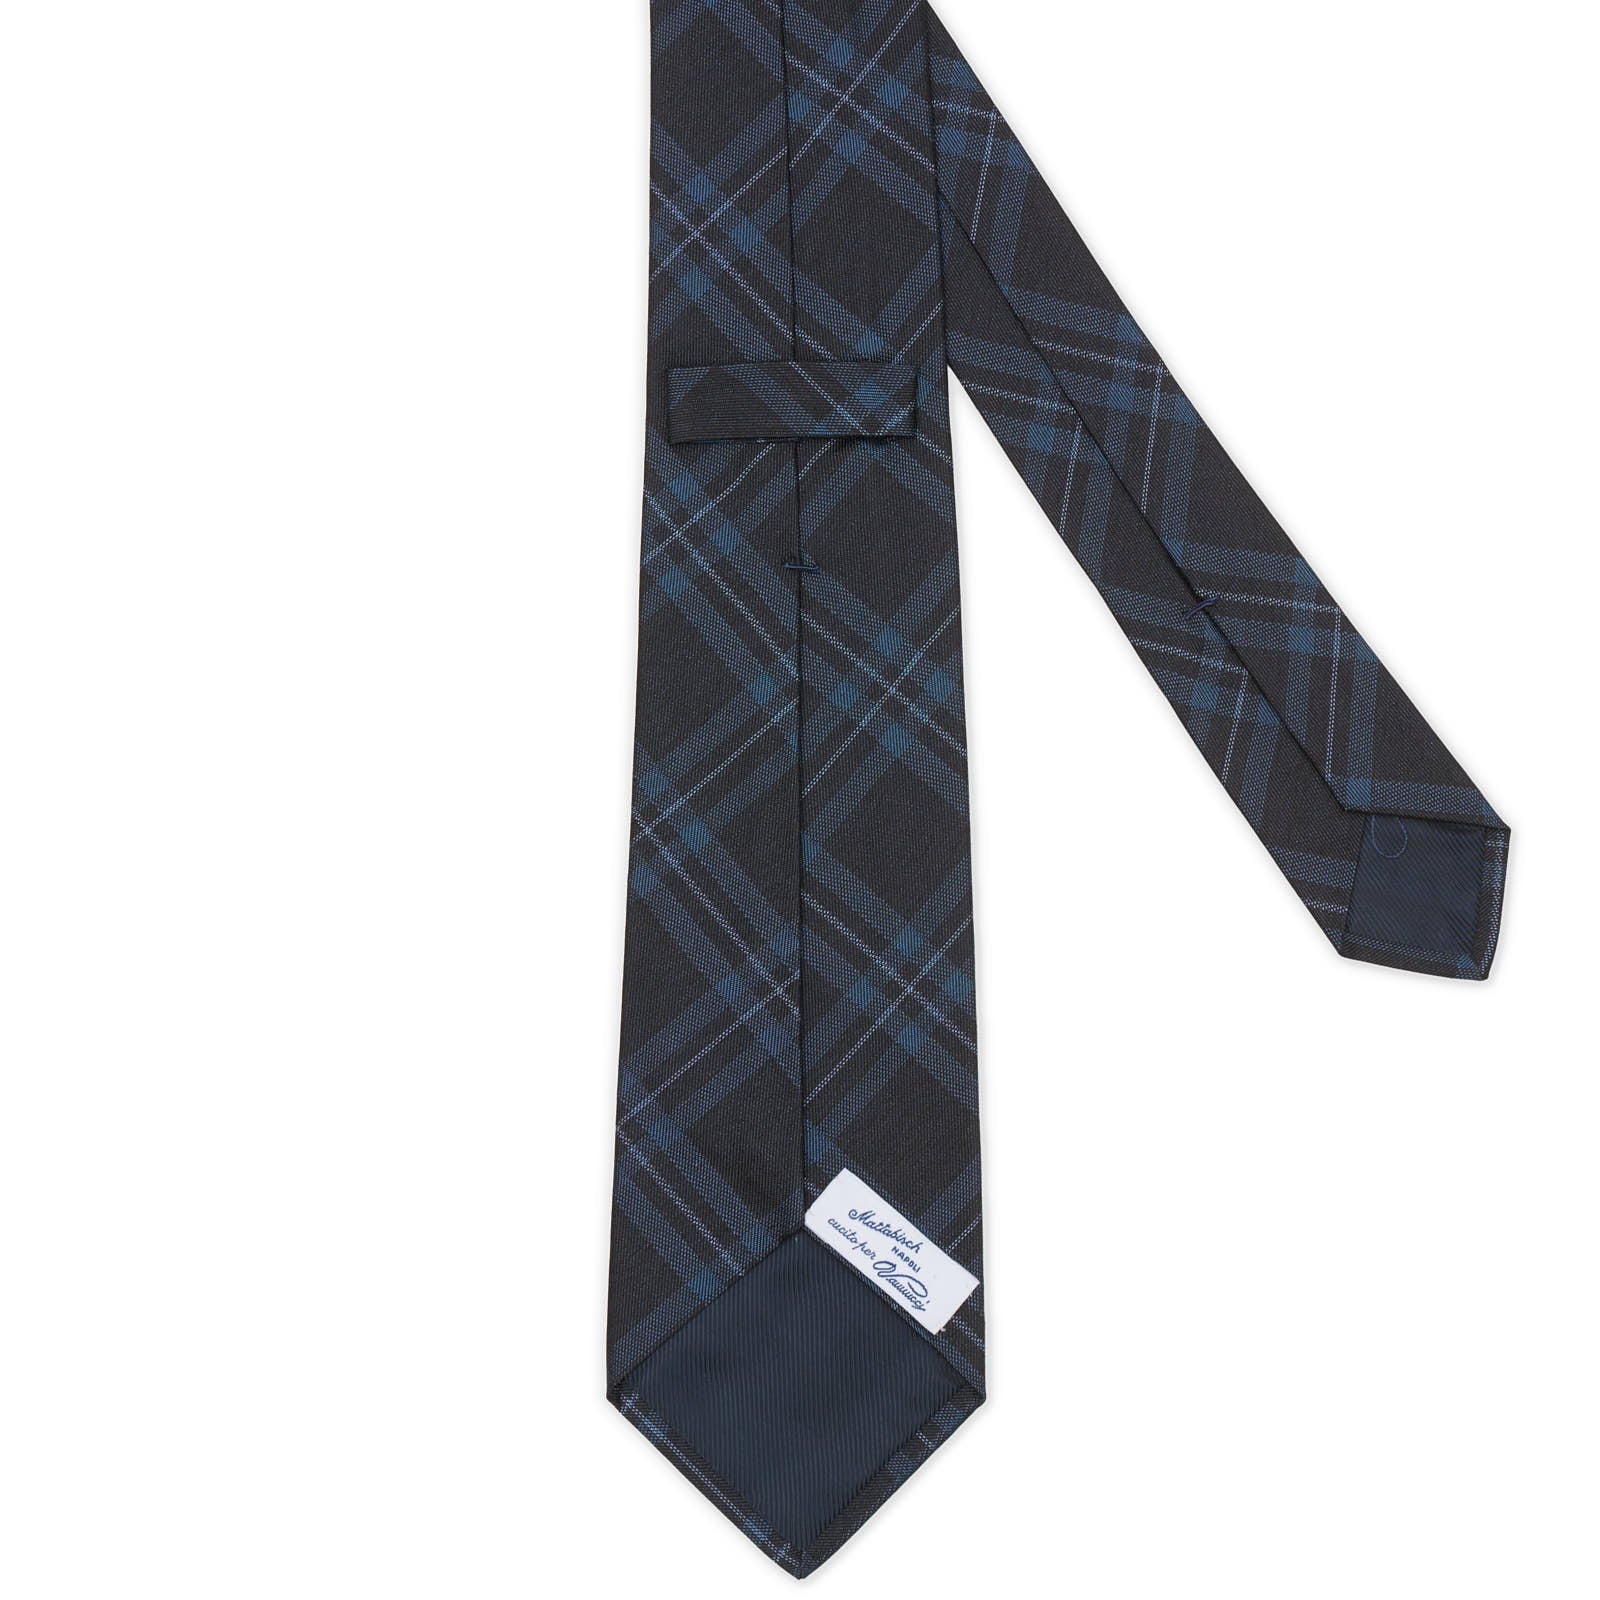 MATTABISCH for VANNUCCI Satin Navy Blue Plaid Silk Seven Fold Tie NEW